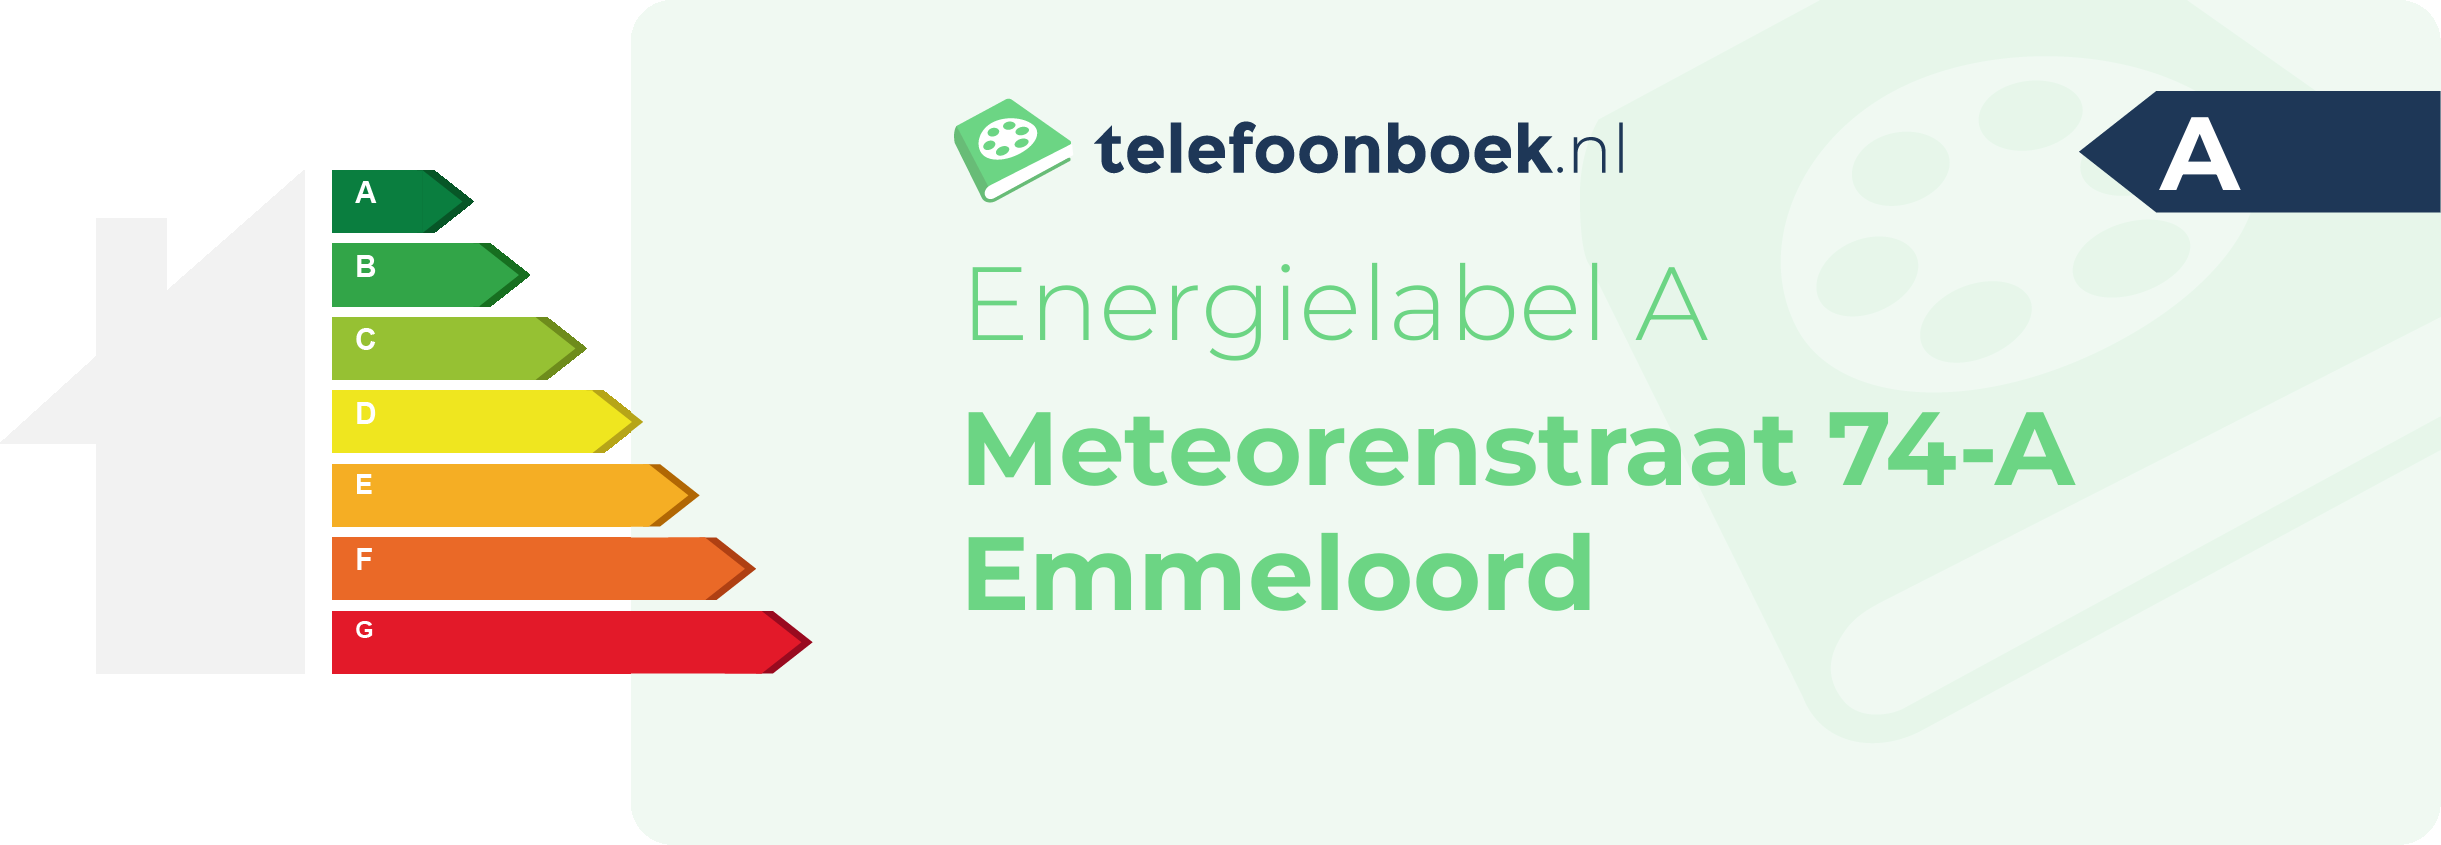 Energielabel Meteorenstraat 74-A Emmeloord